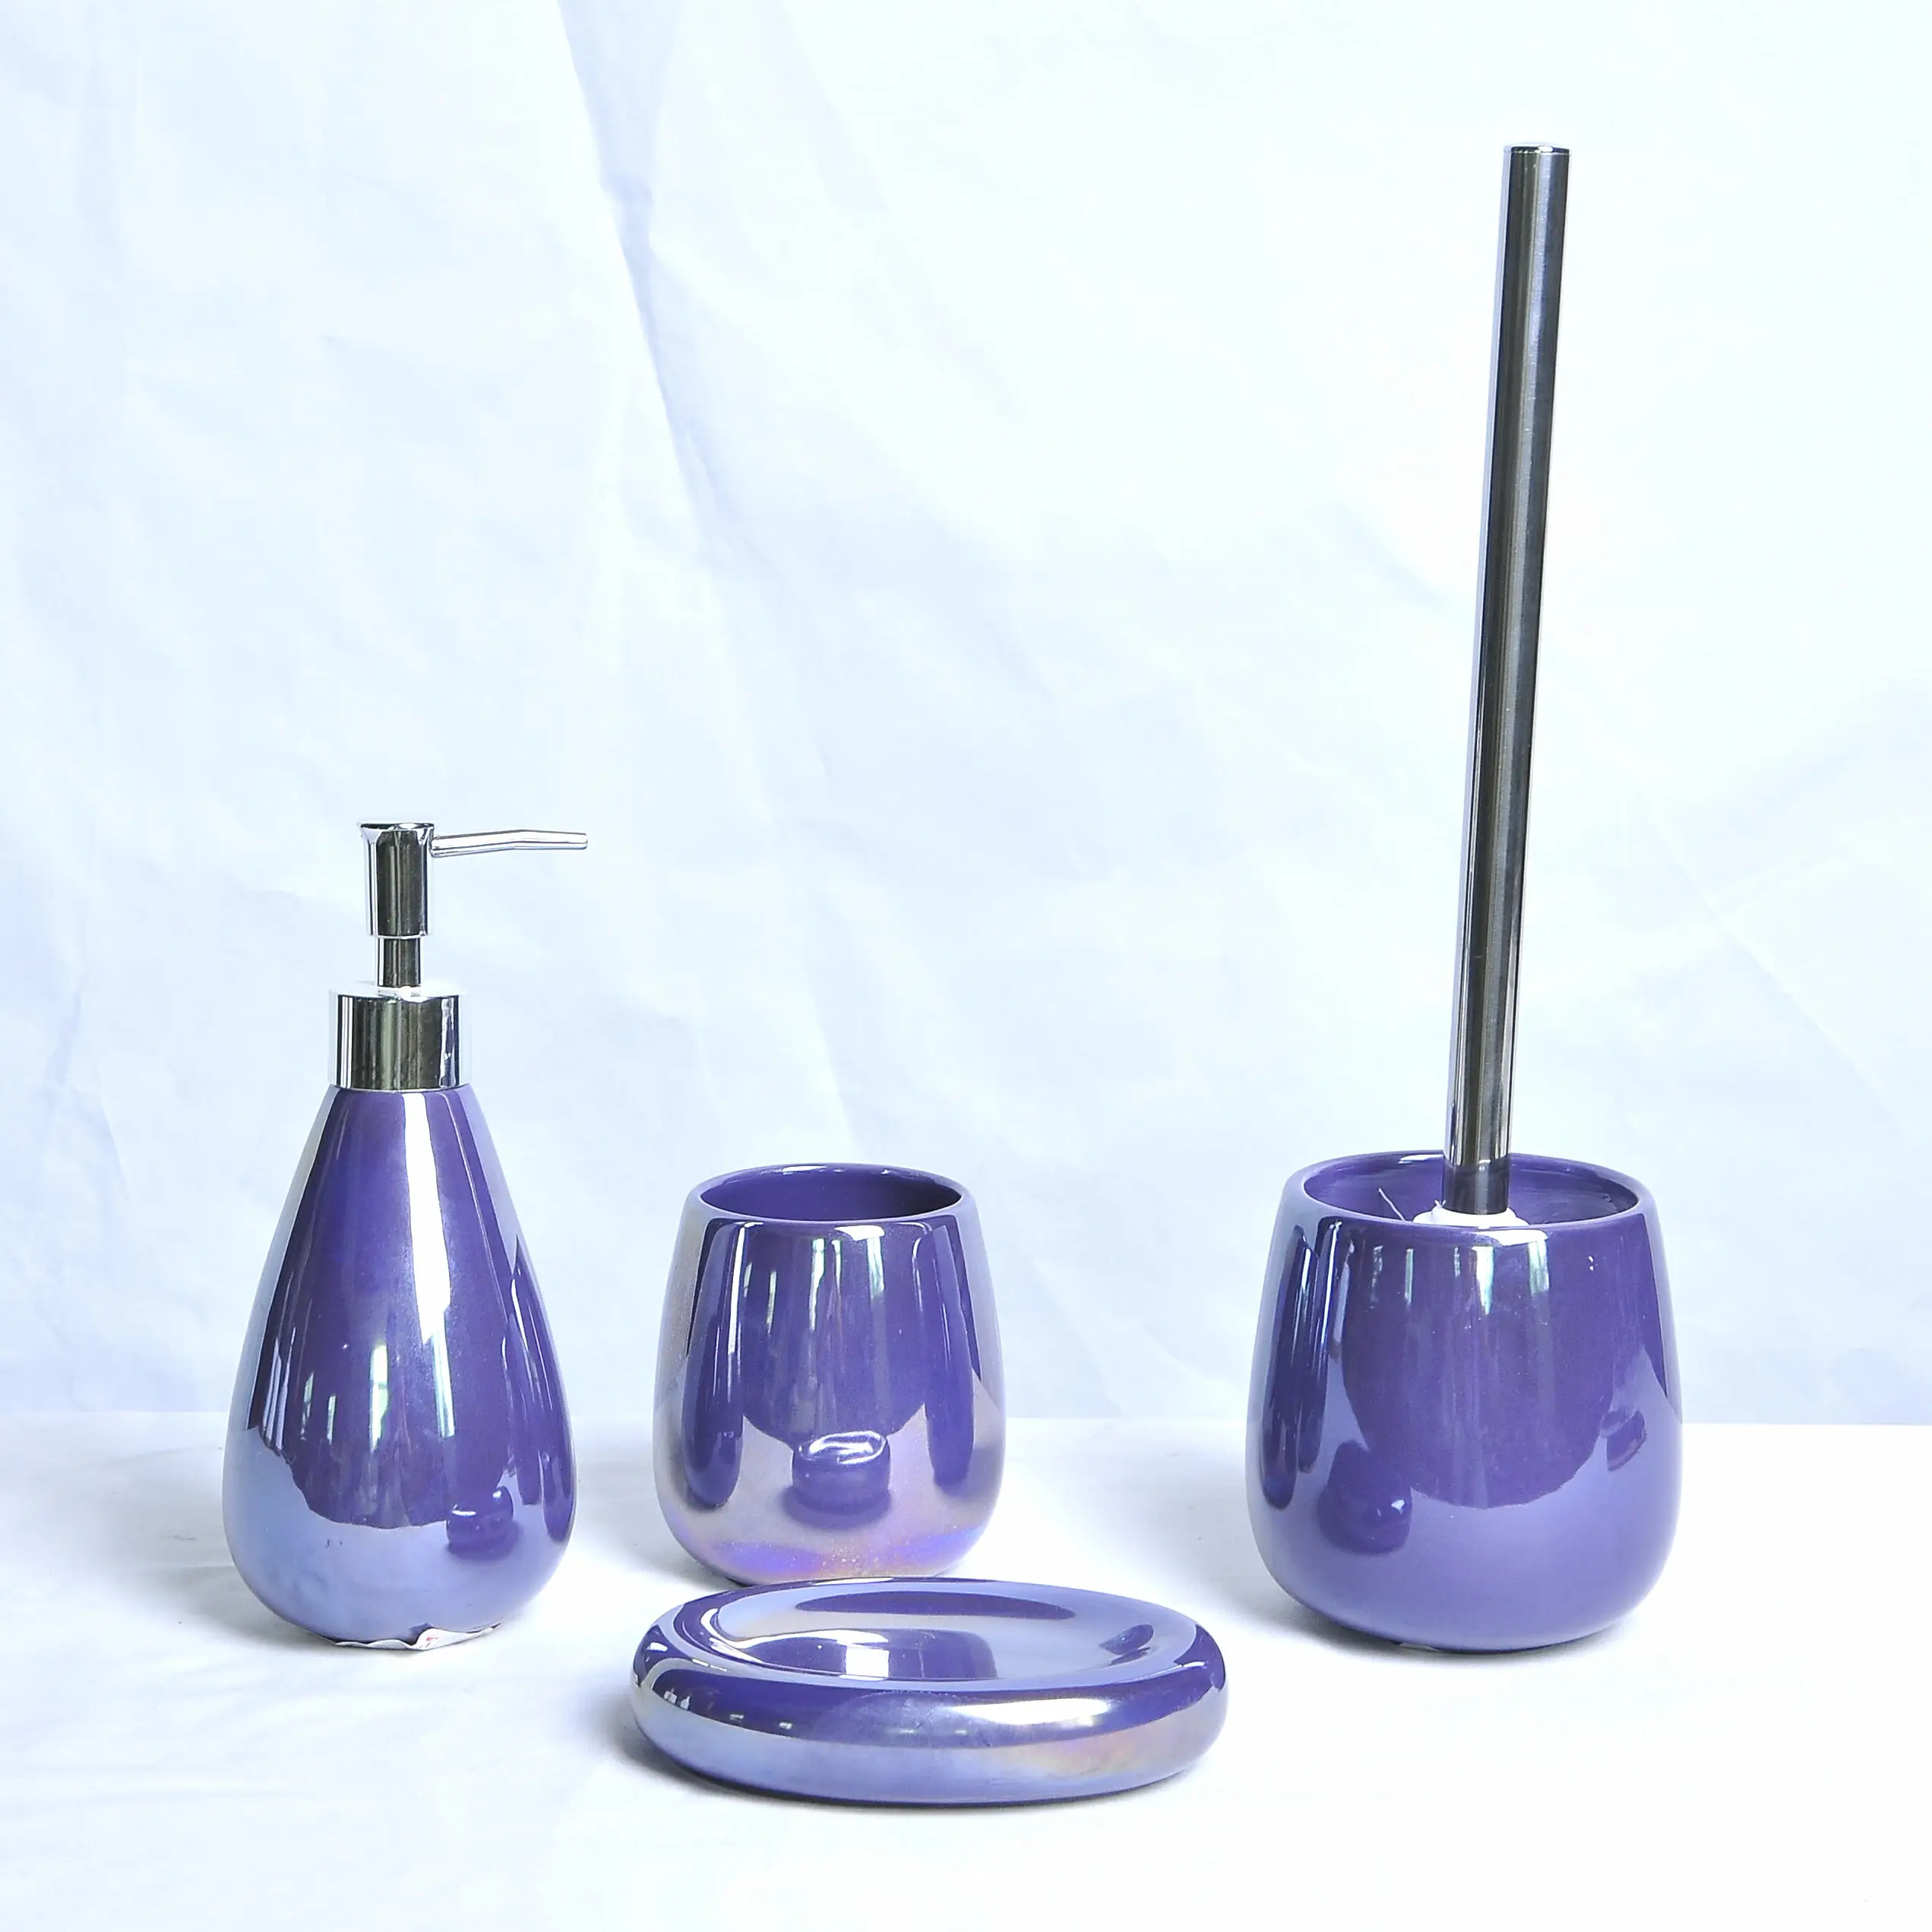 JIA SHUN 4 pezzi prodotti da bagno dell'hotel viola perla smaltato in ceramica accessori per il bagno set